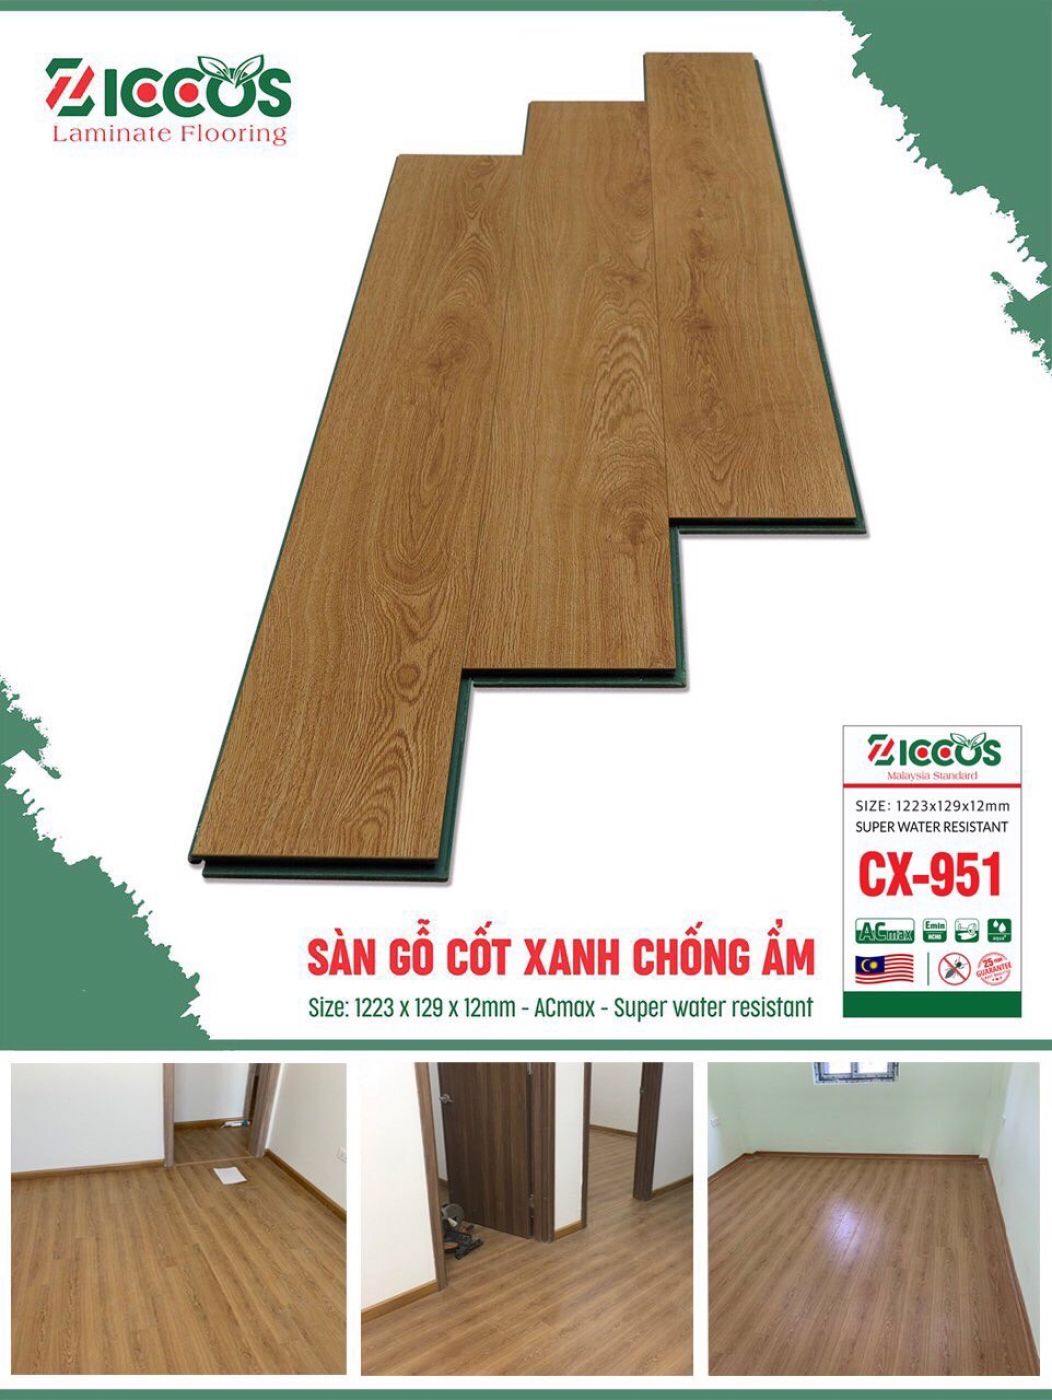 Sàn gỗ cốt xanh kháng ẩm 12mm